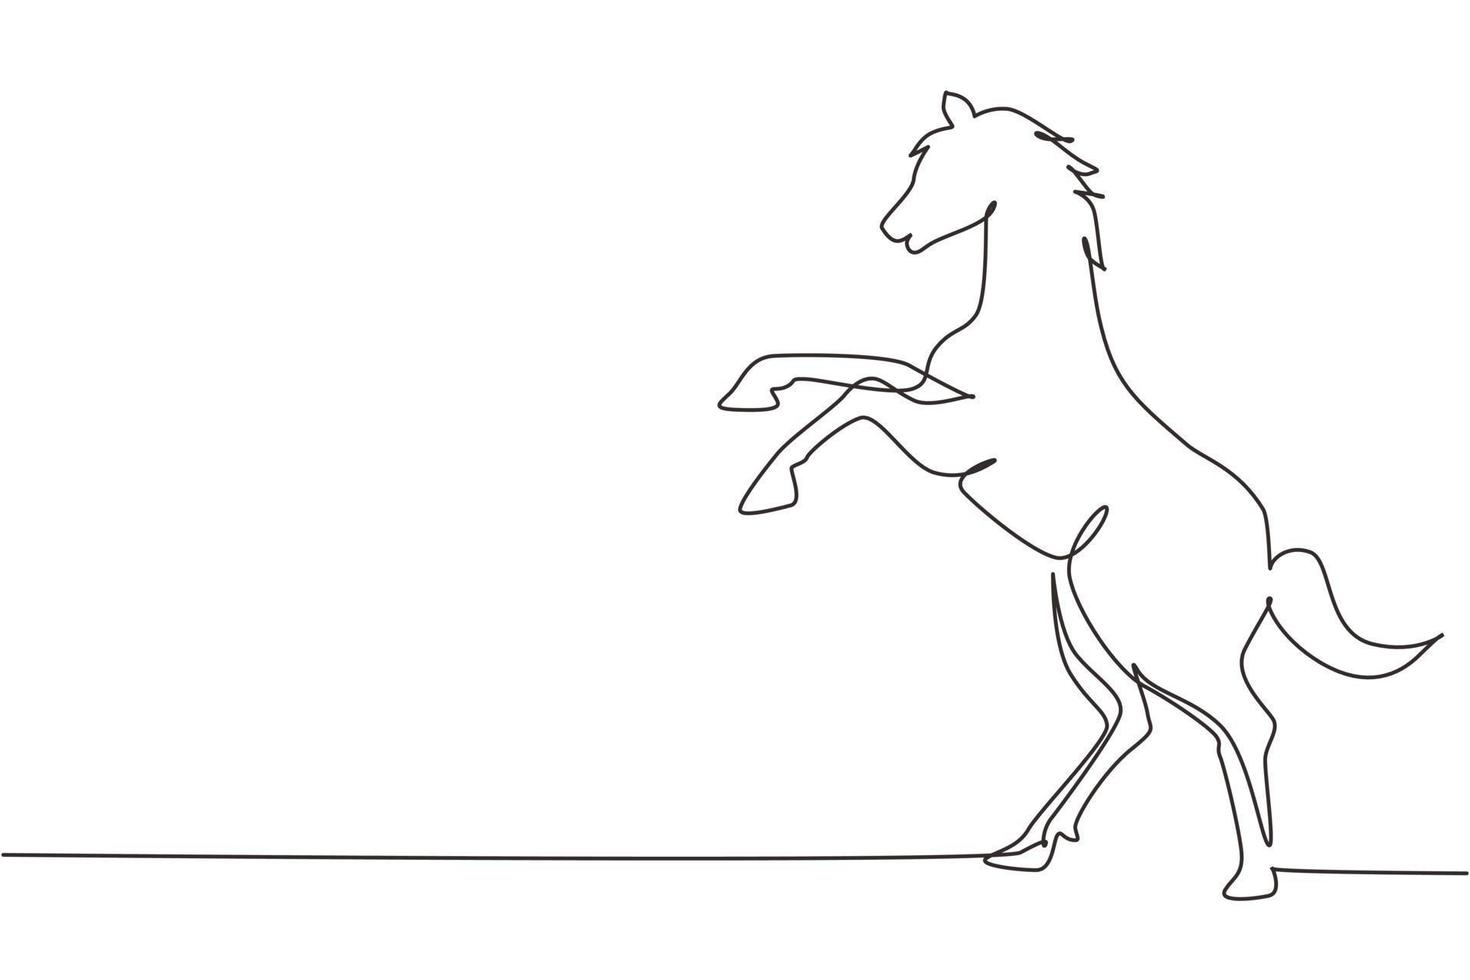 enda kontinuerlig linjeteckning som föder upp vildhäst. stark karaktär. hoppträning. hästkapplöpningslogotyp symbol, ridsport märke. en rad rita grafisk design vektorillustration vektor